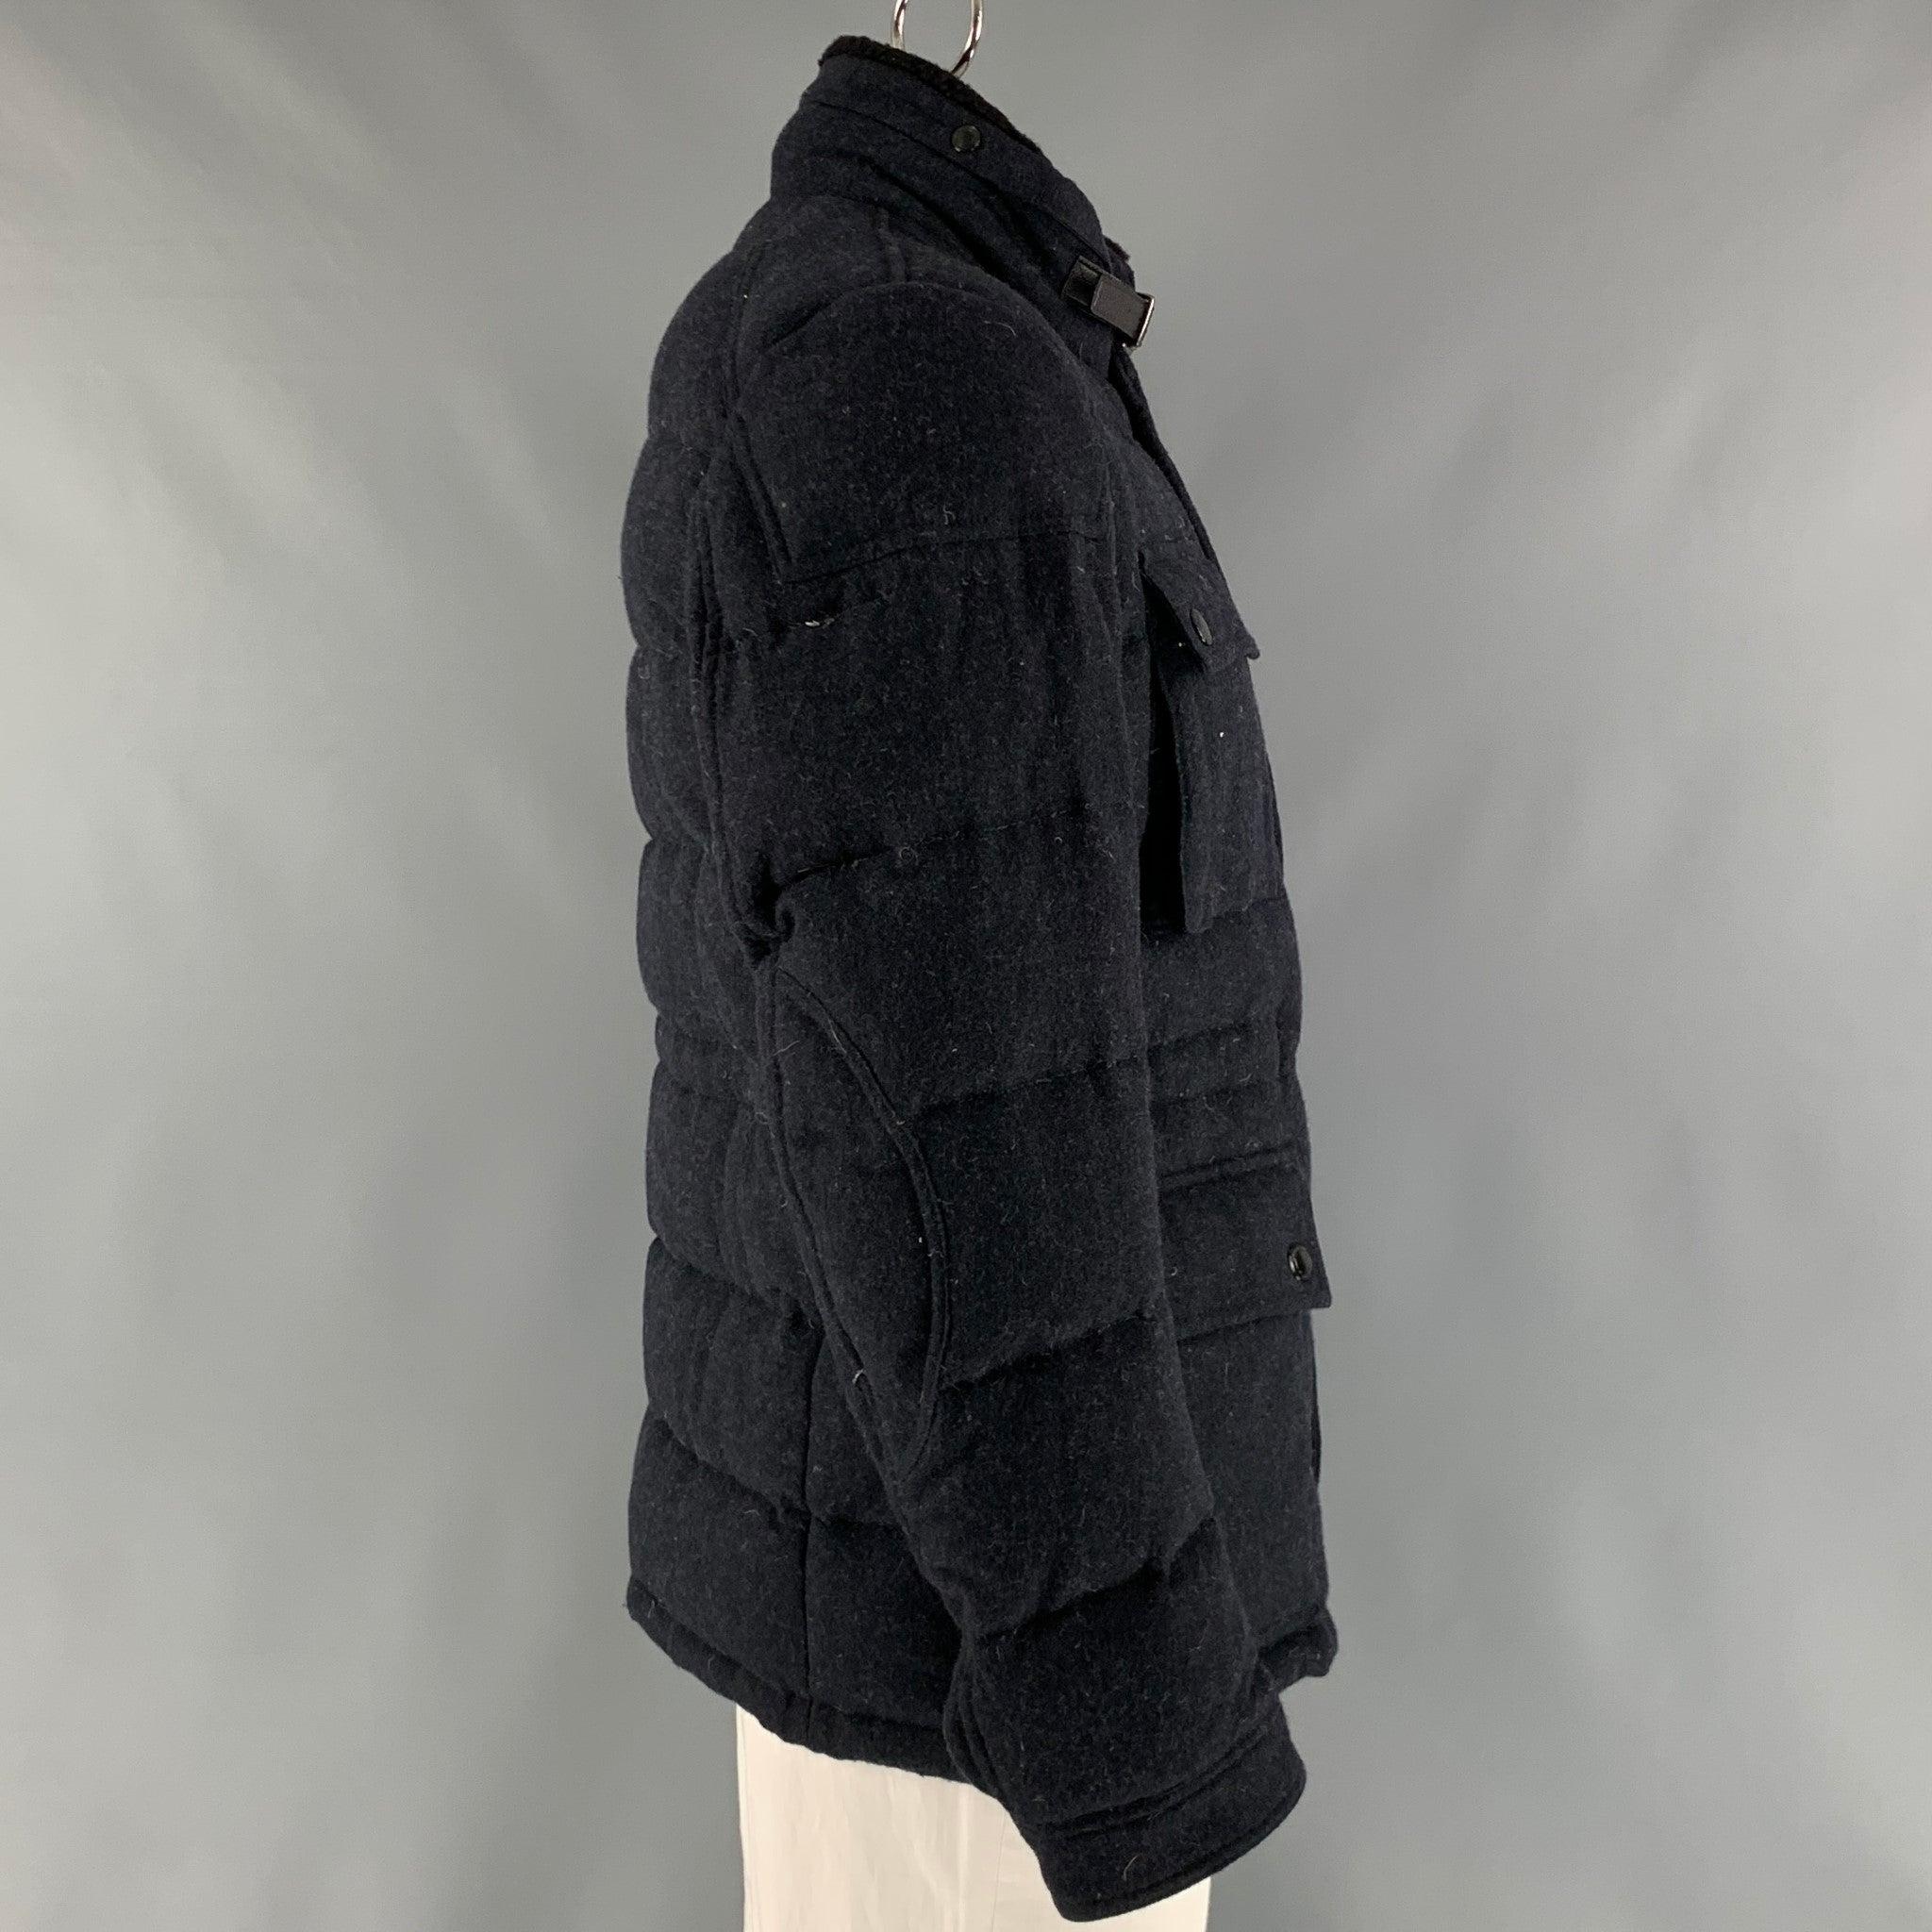 Le manteau BRIT de Burberry est réalisé en laine marine et polyamide molletonné avec une doublure à carreaux. Il présente un style matelassé, un col amovible, des poches à rabat et une fermeture à glissière. 
fermeture à glissière. Très bon état